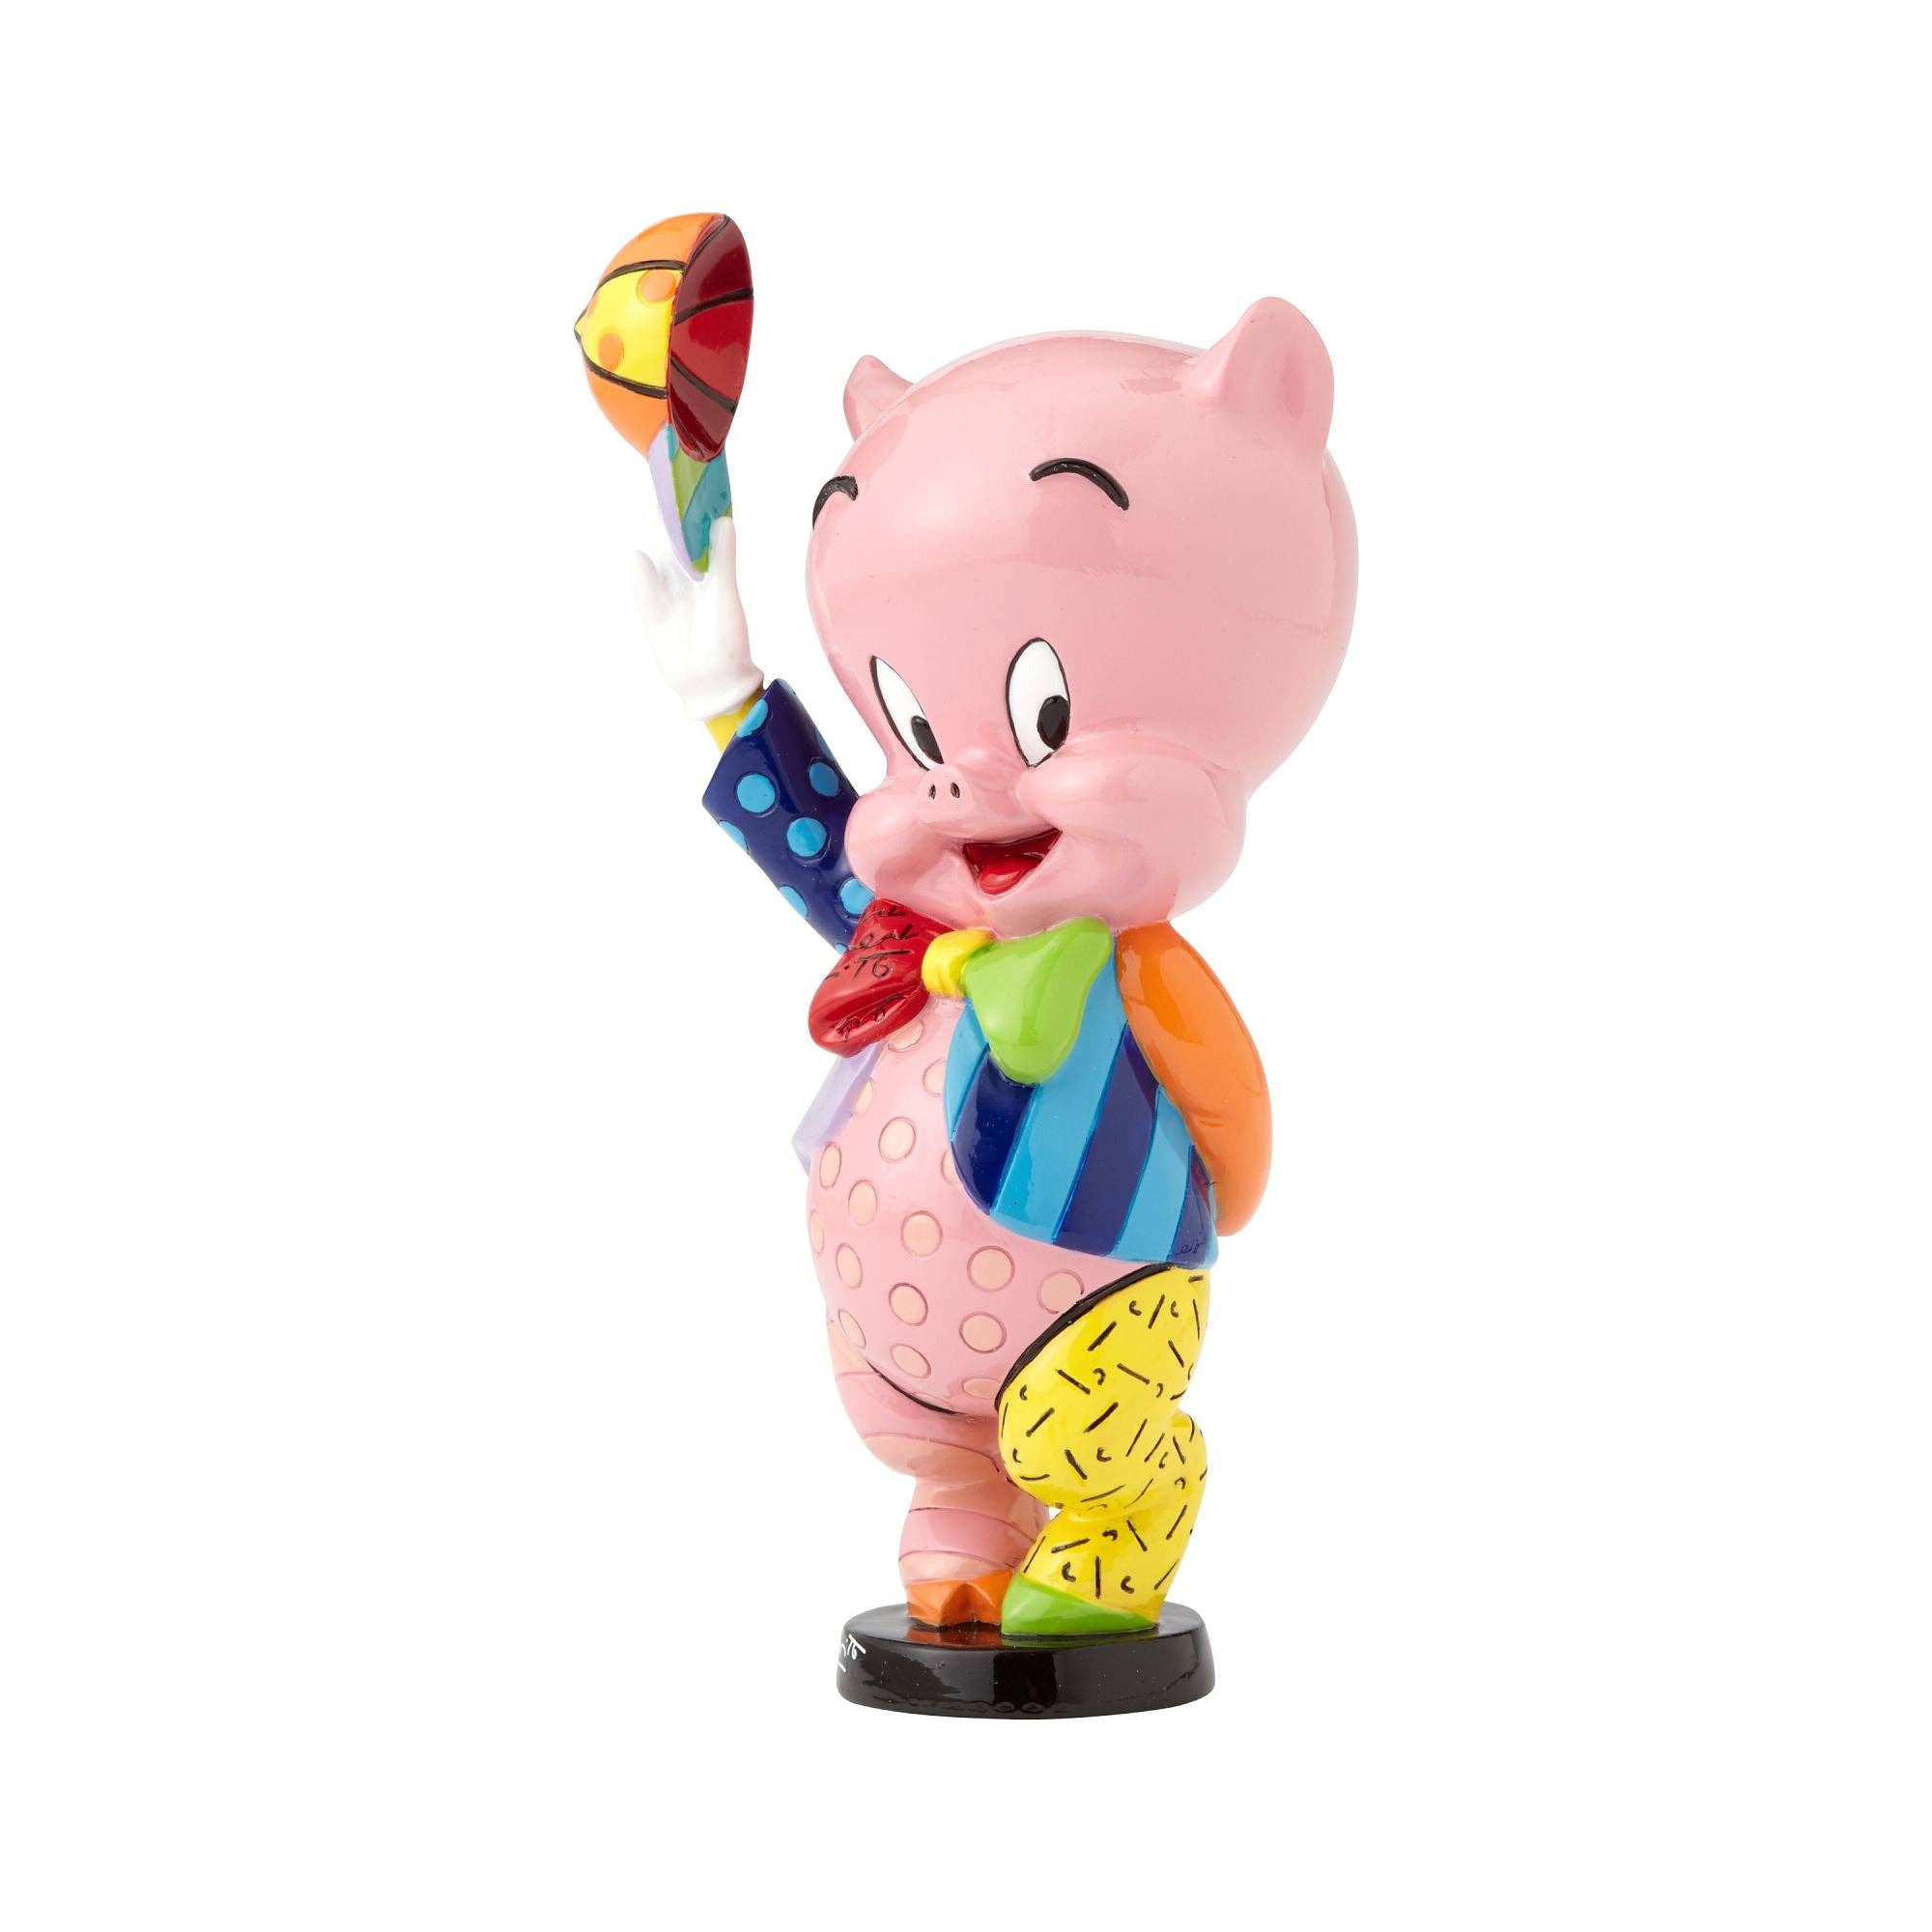 Porky Pig with Baseball Cap Figurine